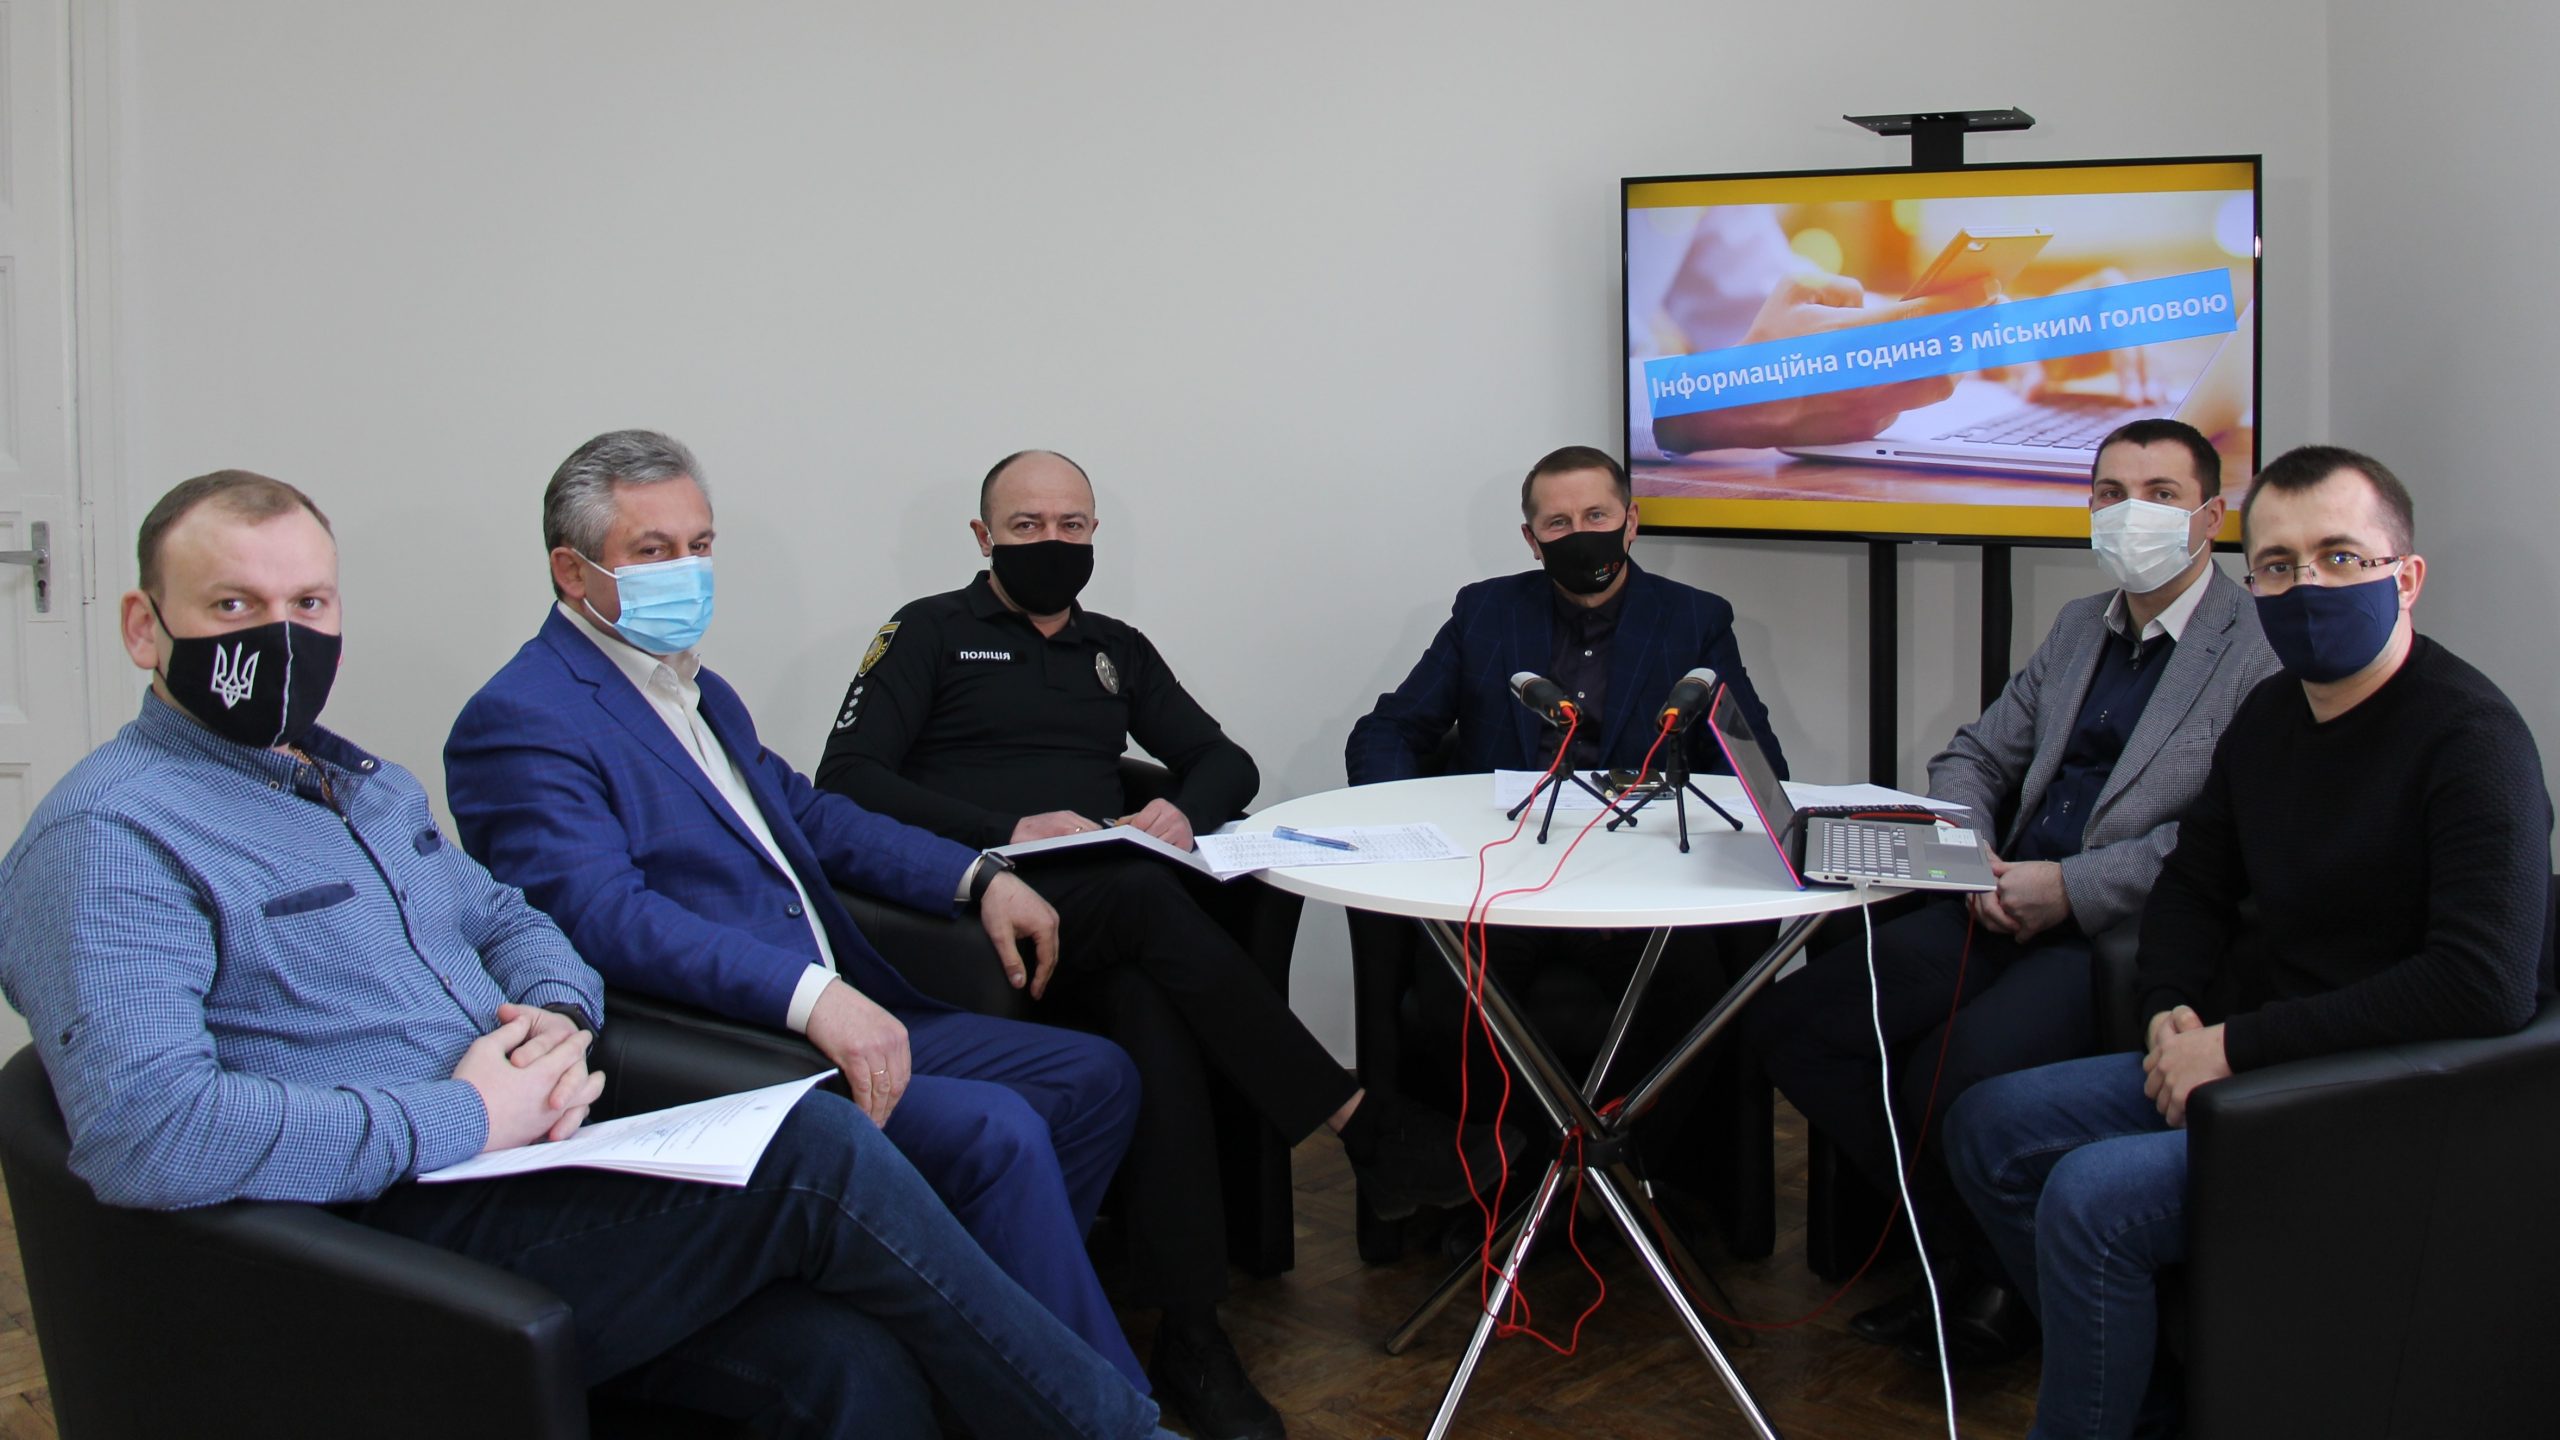 КМЦ “Дрогобич:”. Інформаційна година з міським головою Тарасом Кучмою